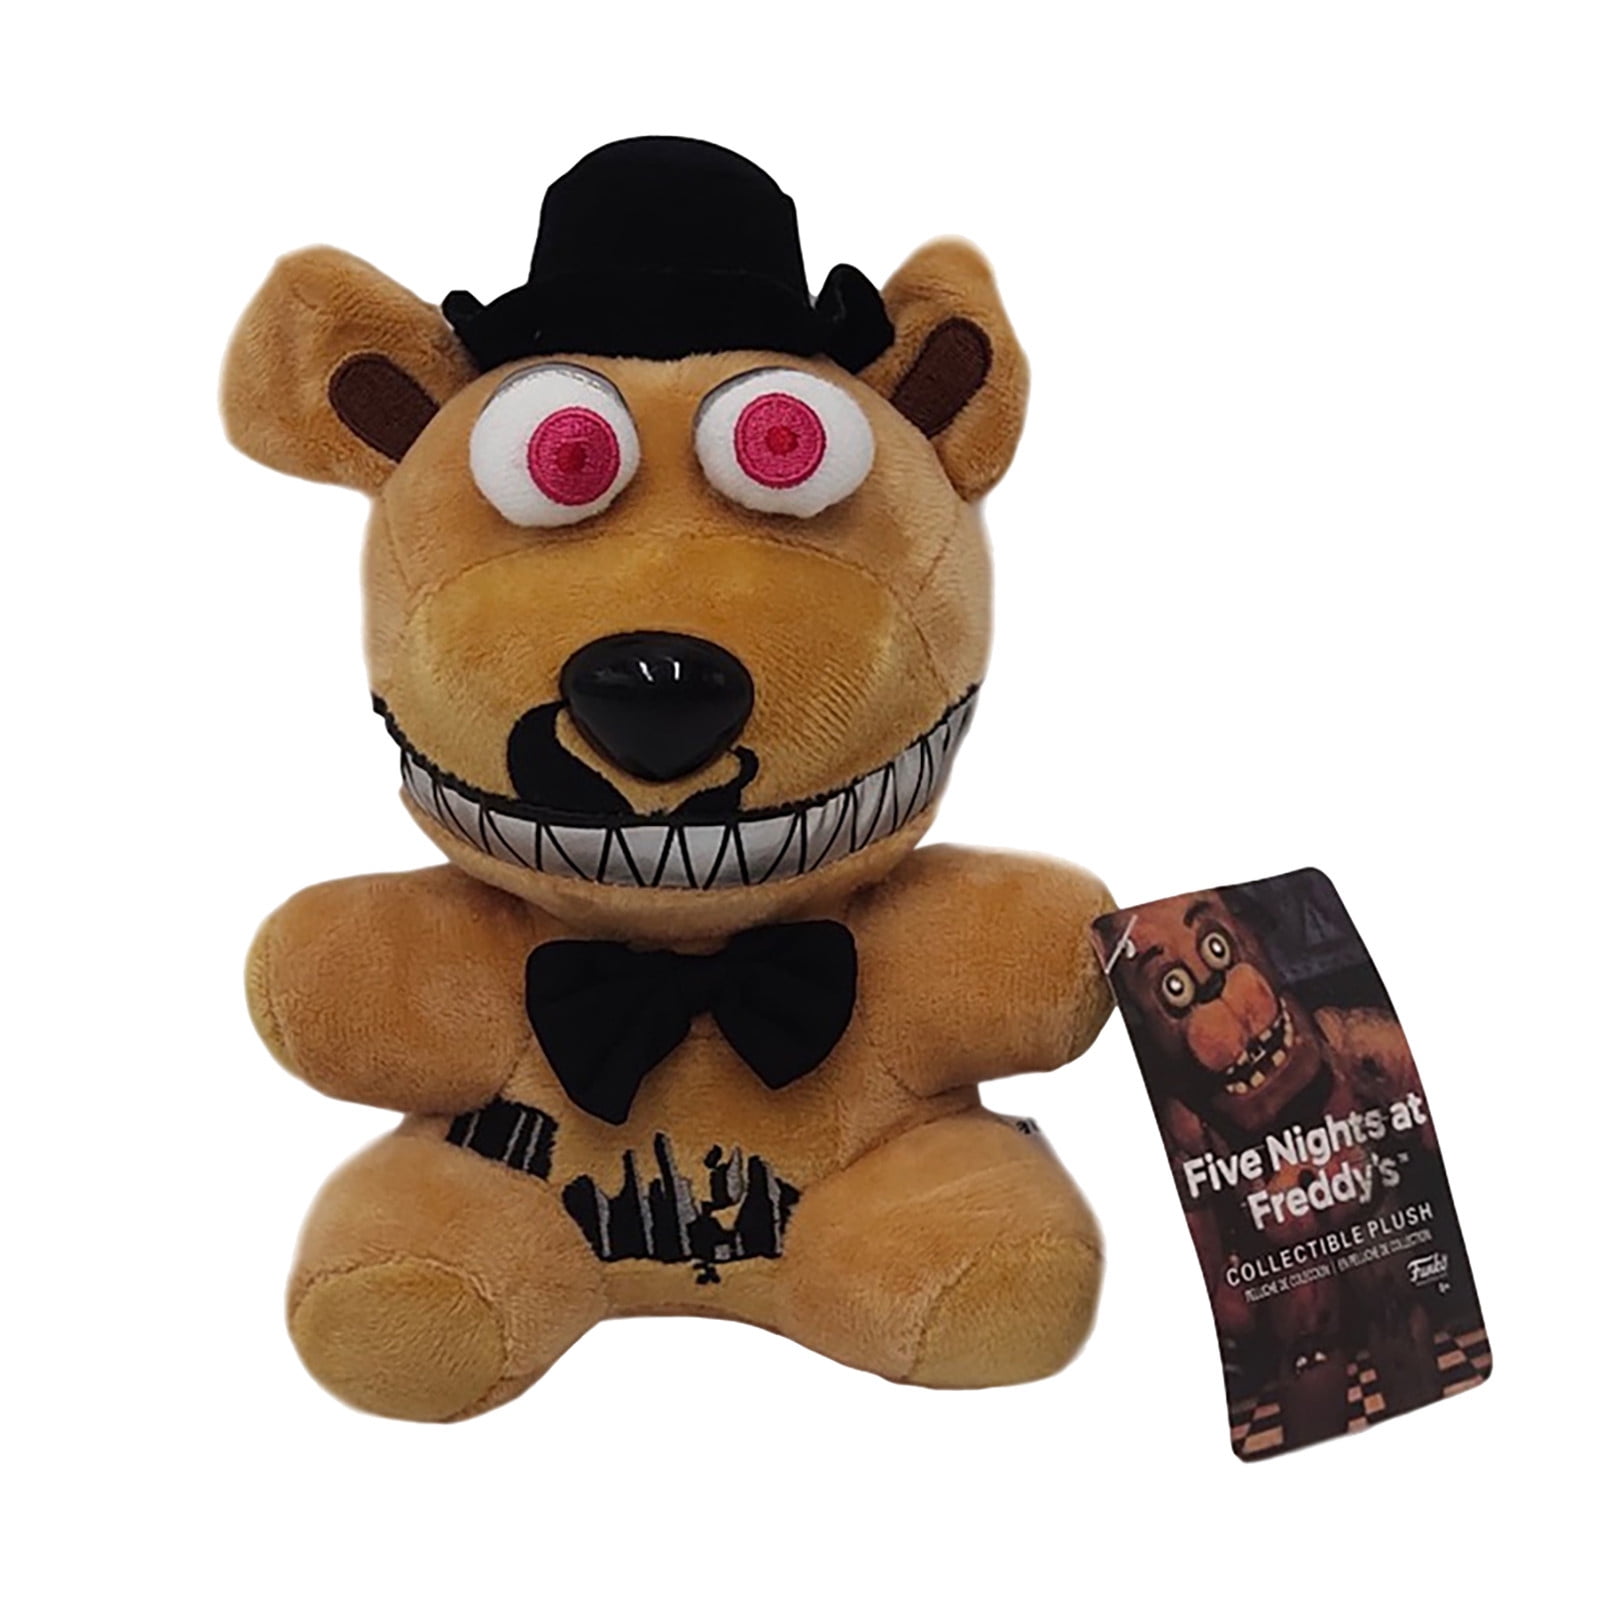 FNAF Five Nights at Freddy's Nightmare Freddy Doll Plush Toys Gift 